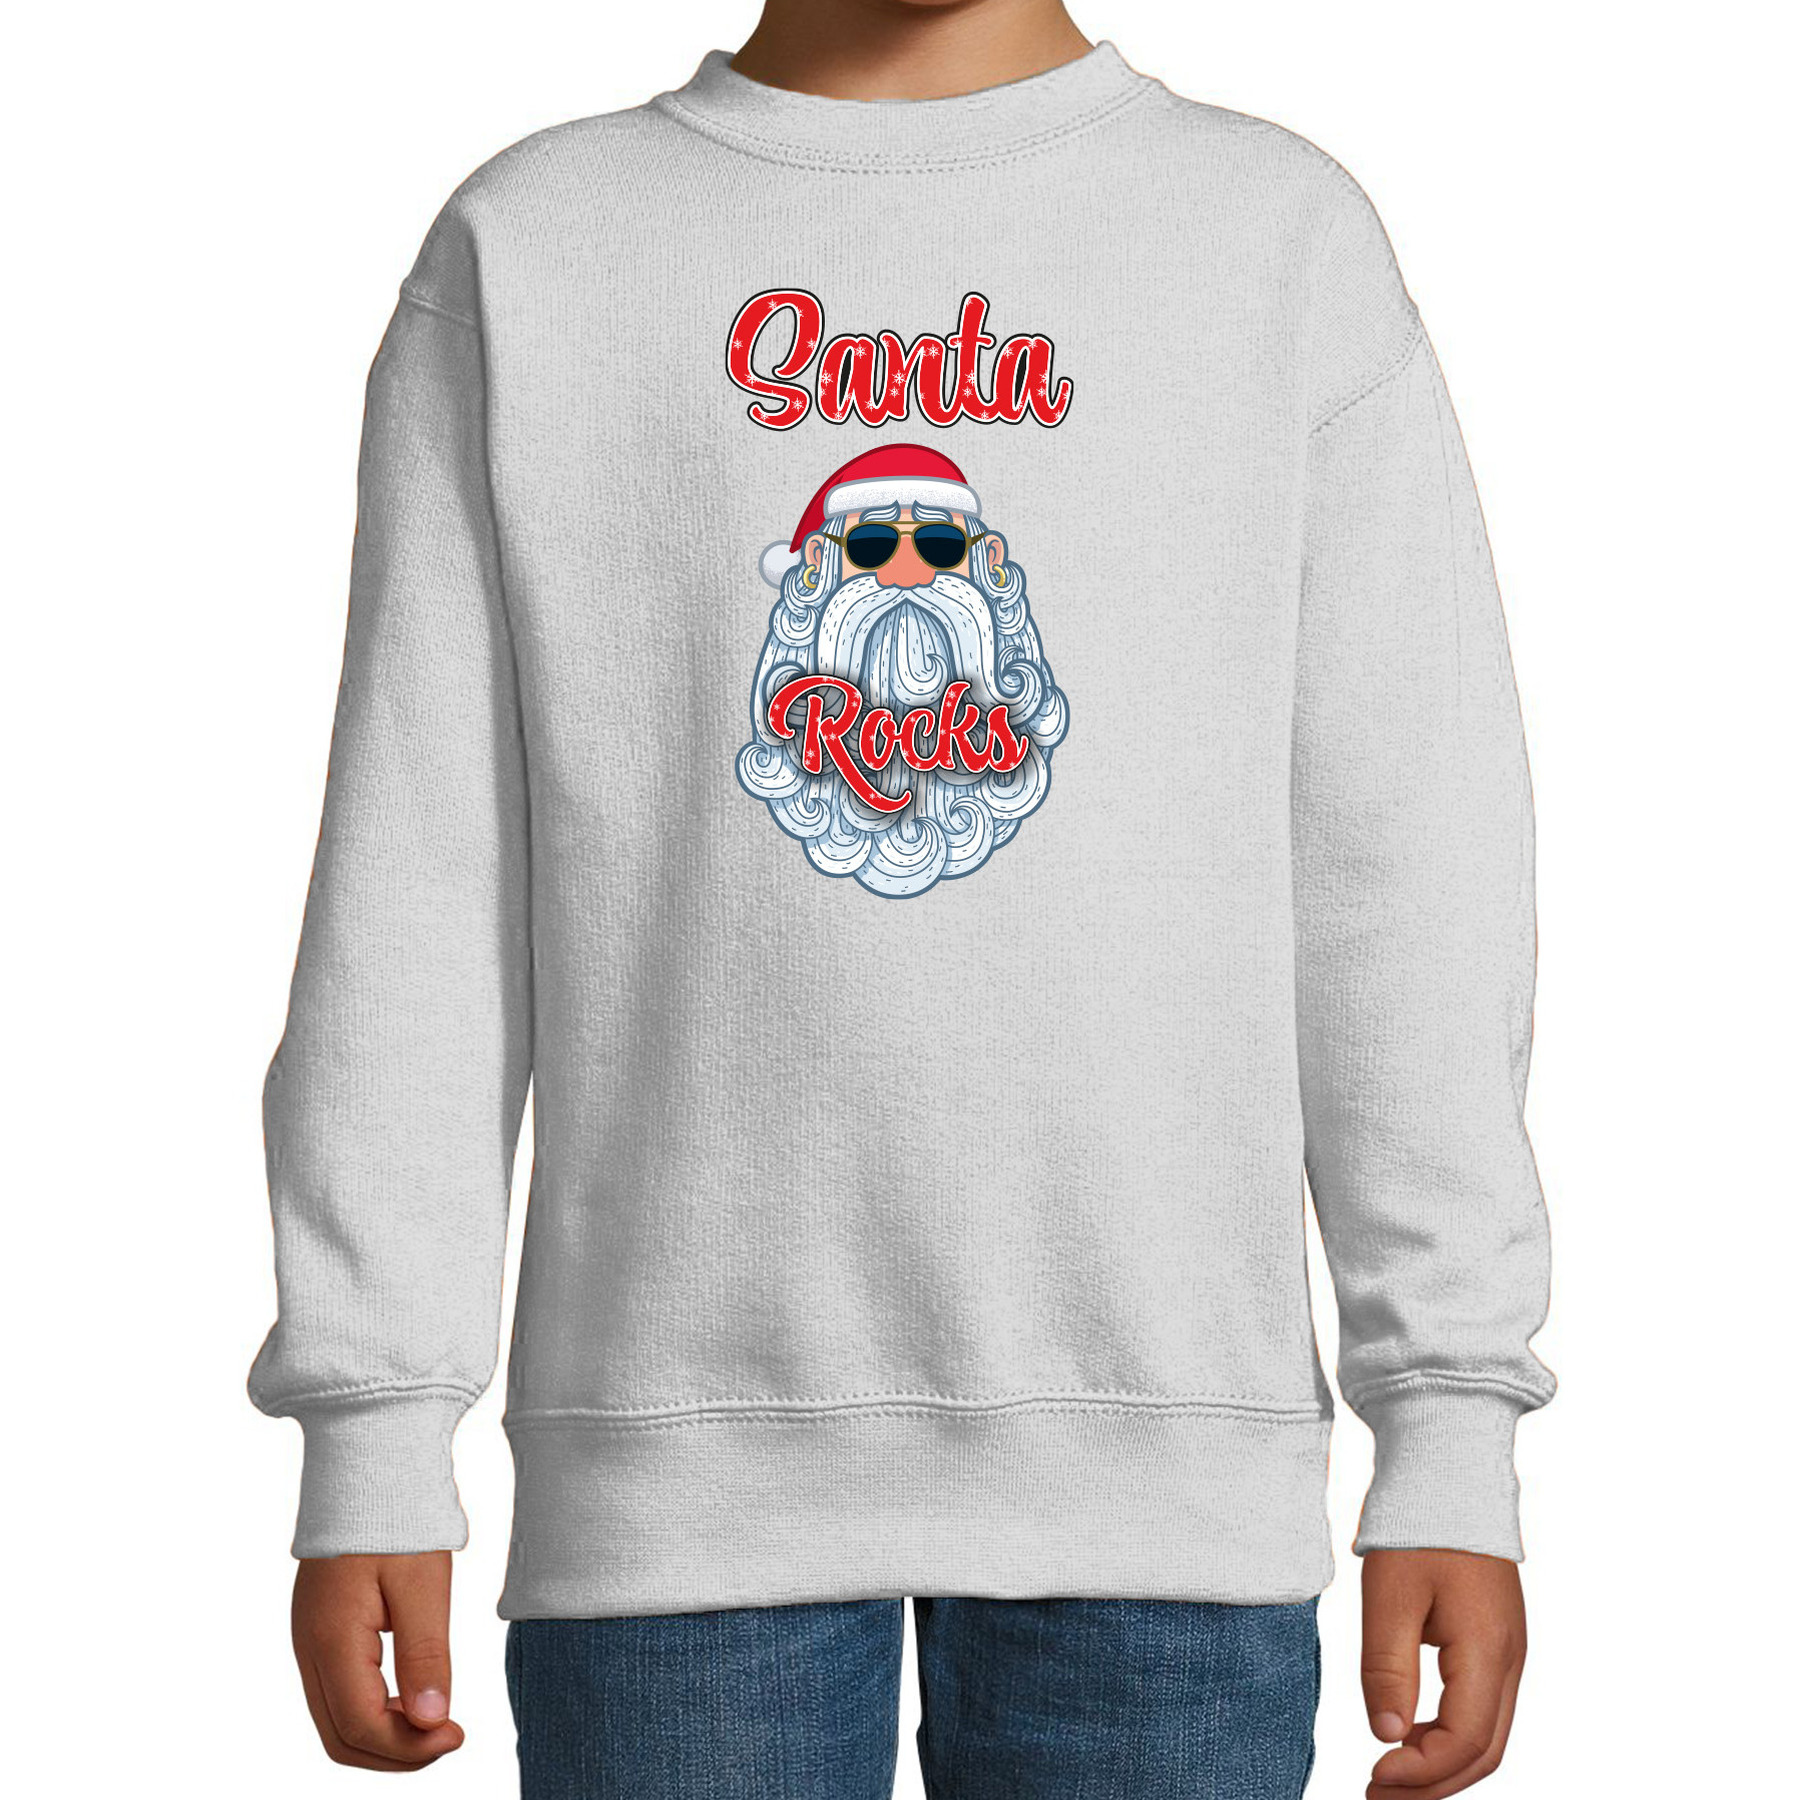 Kersttrui-sweater voor kinderen Kerstman Santa Rocks grijs